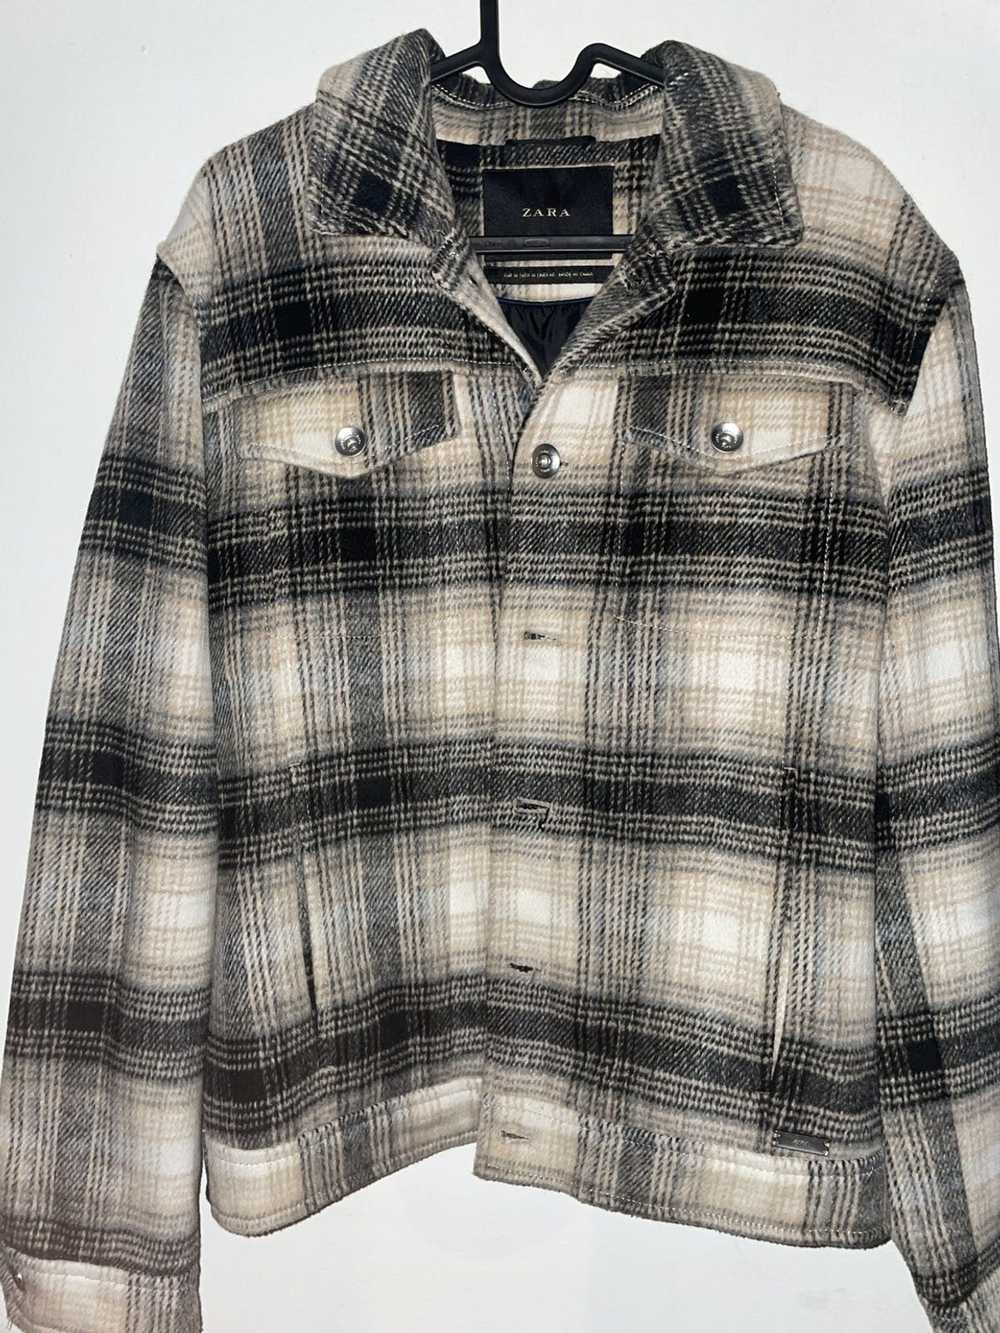 Zara Checkered cropped style jacket - image 1